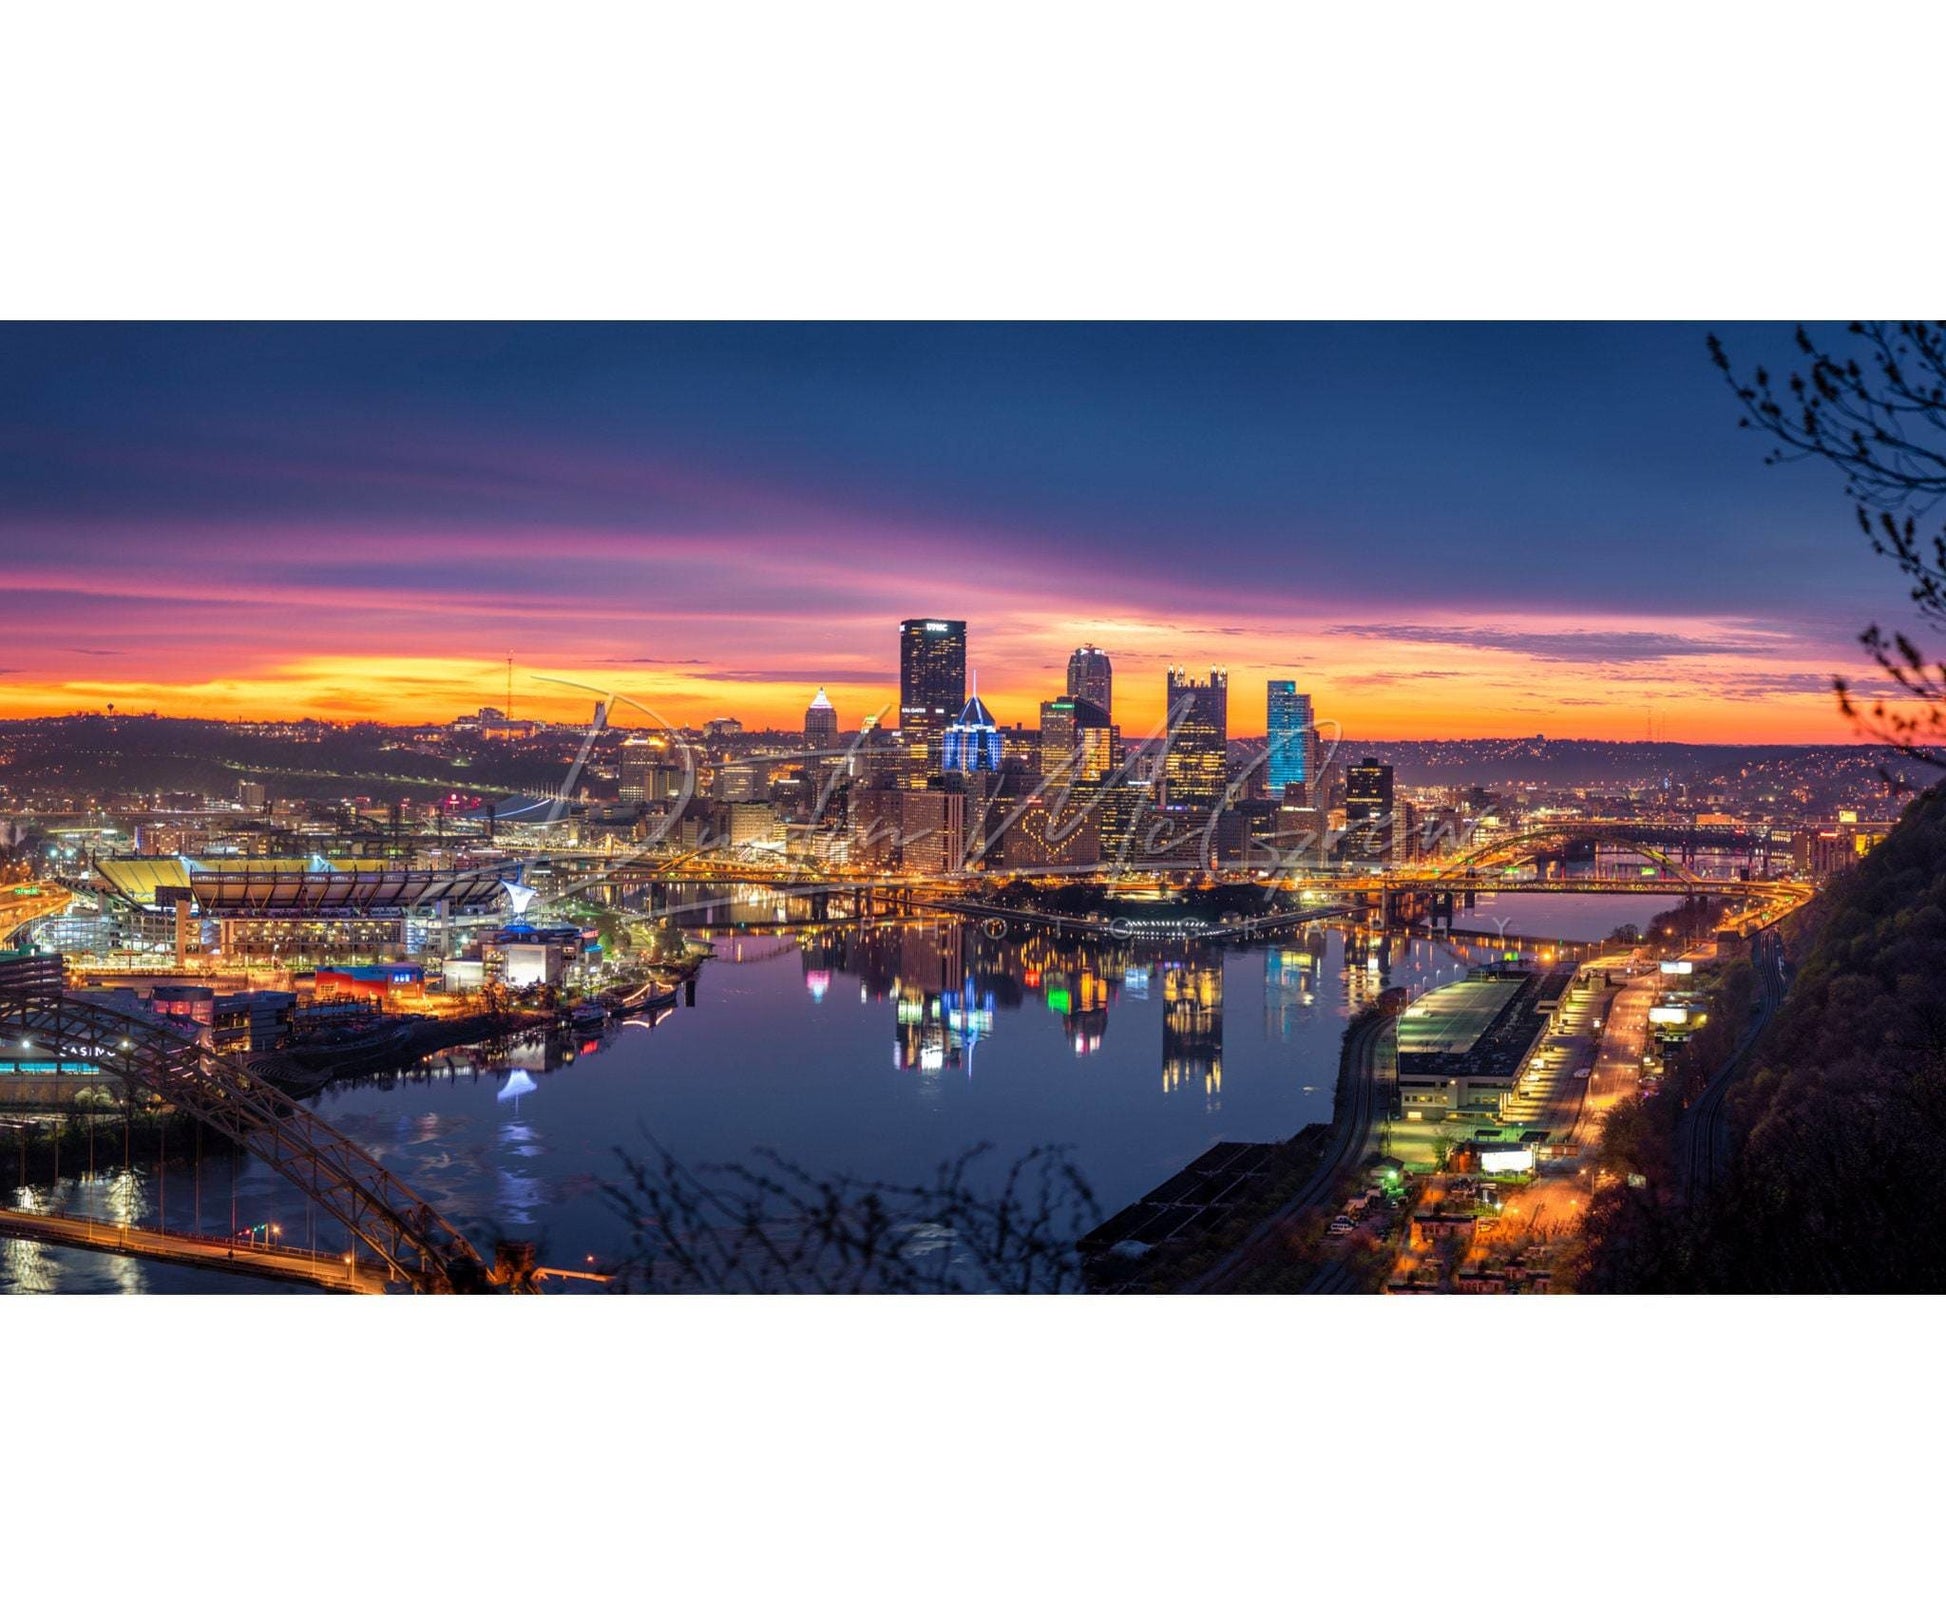 Pittsburgh Skyline Photo - Panorama Sunrise Print 5 X 10 / Kodak Endura Paper